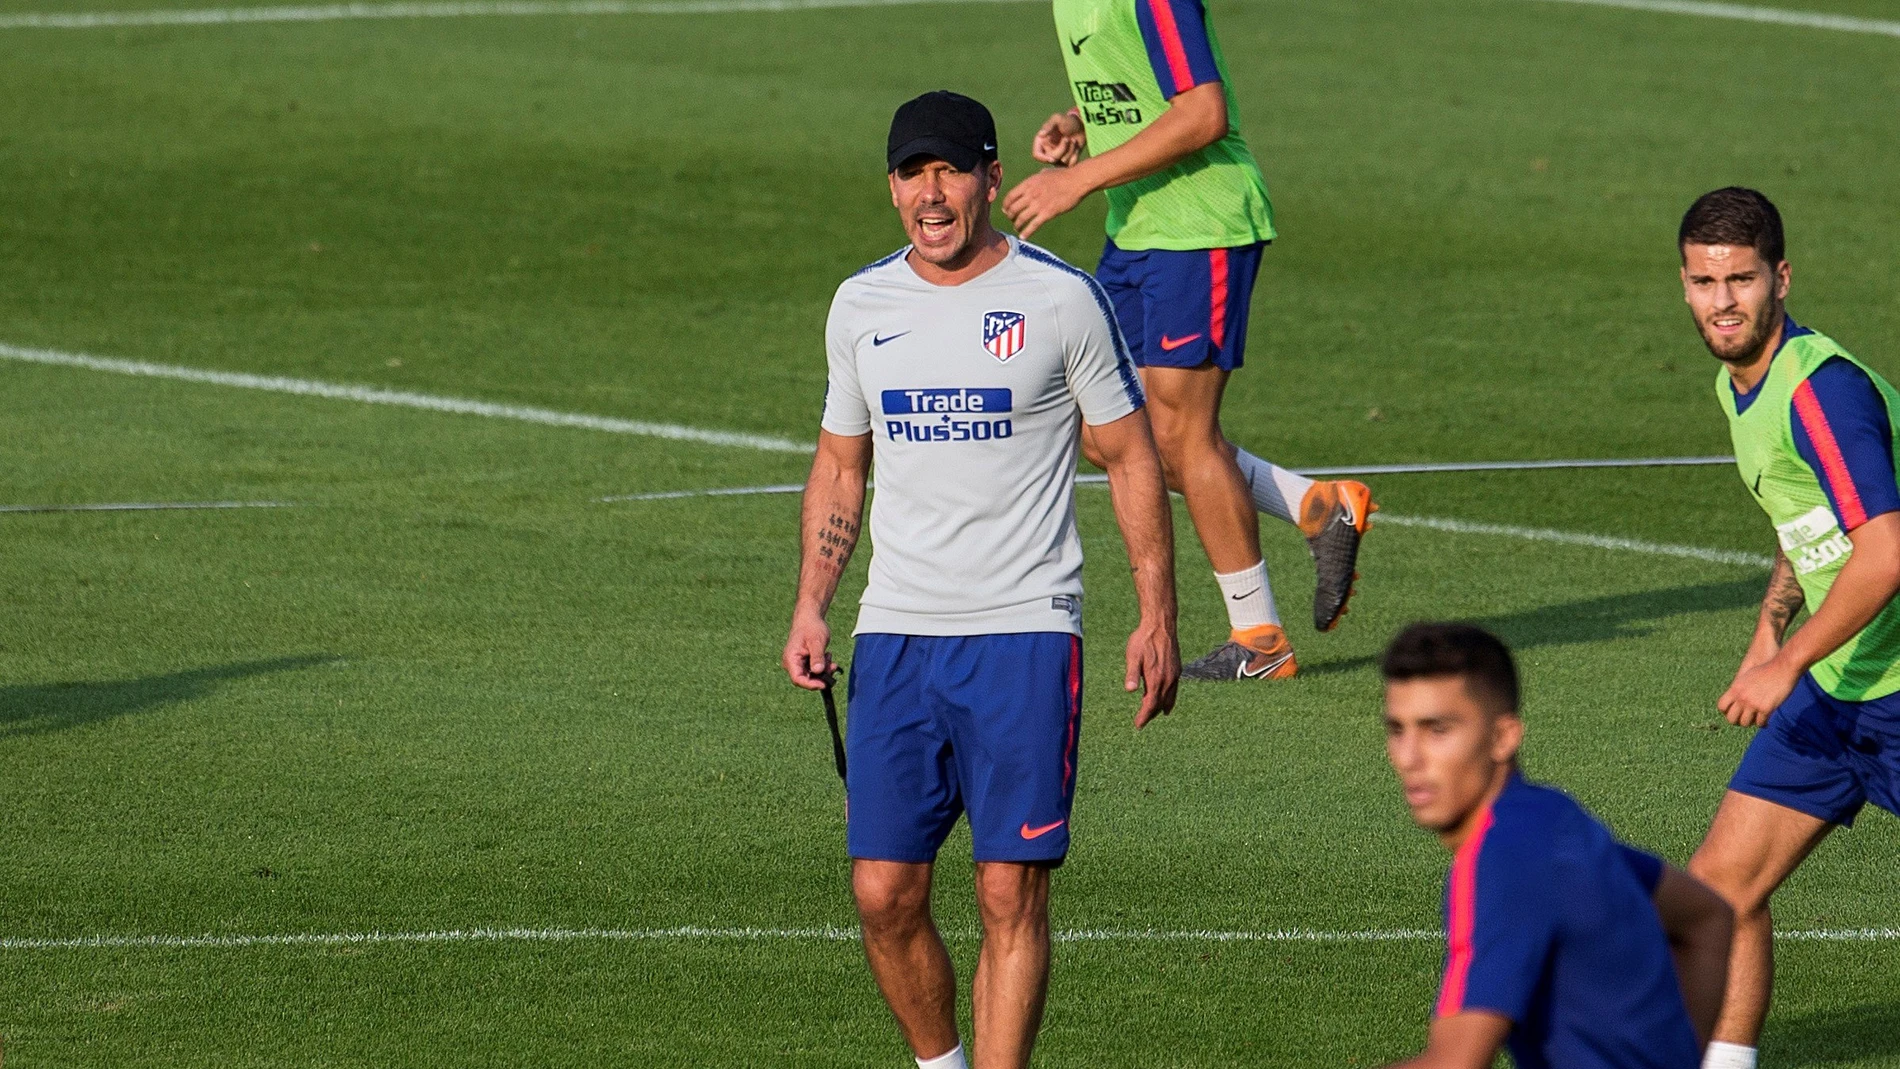 Simeone, durante el entrenamiento del Atlético de Madrid